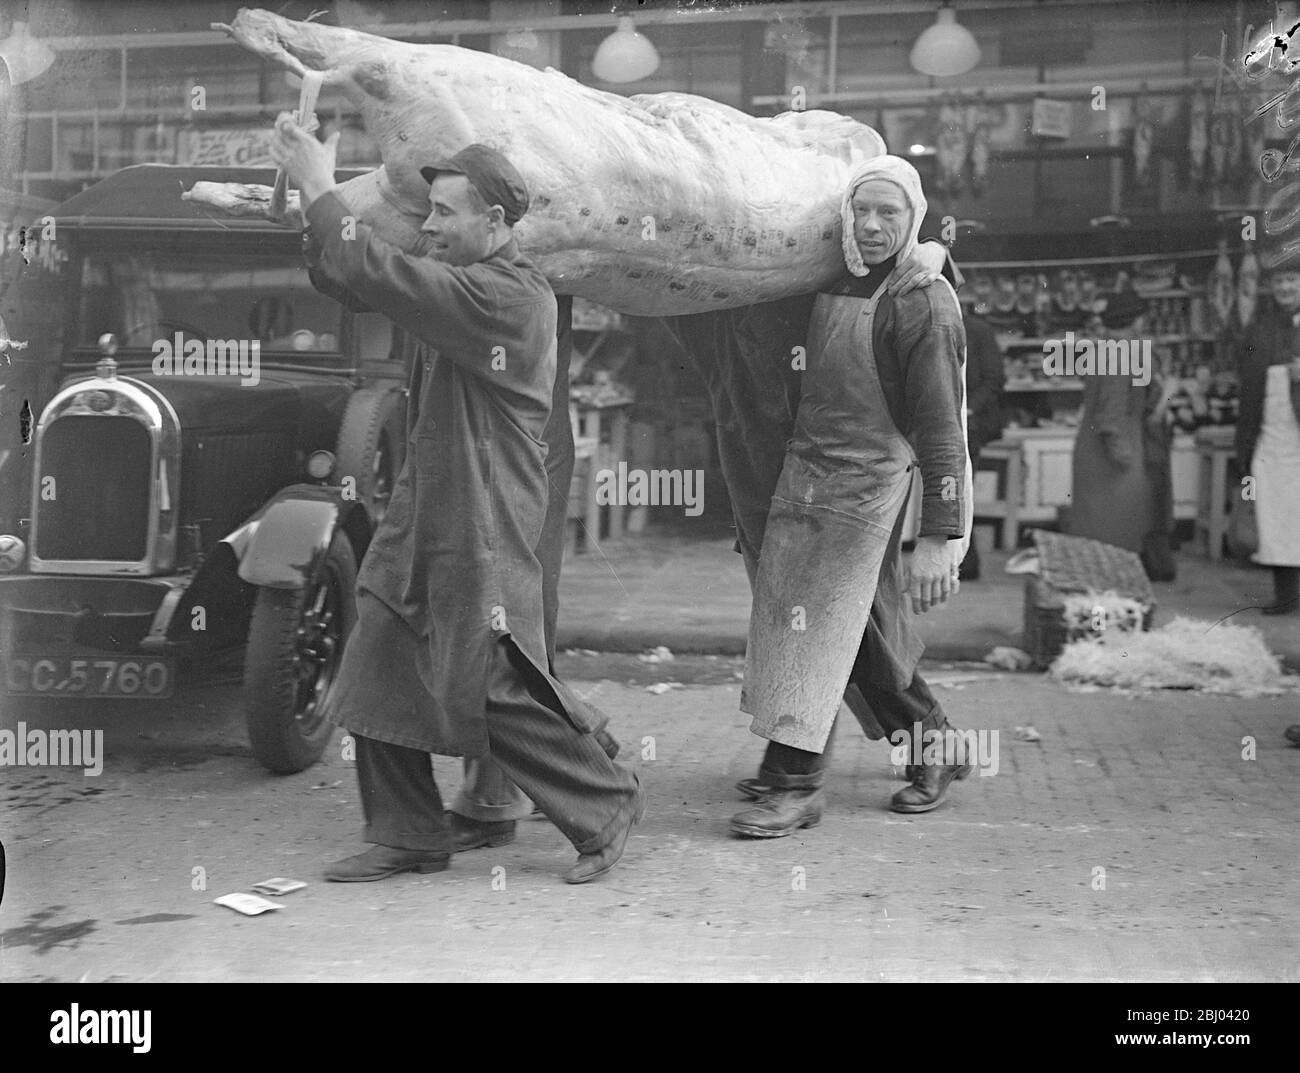 Un baron de boeuf, pesant 30 pierres, est arrivé au Smithfield Market en route pour le banquet du maire Lord, qui a lieu du 9 novembre au . - spectacles photo, porteurs de deux baron de la peseuse de boeuf à Smithfield. - 5 novembre 1937 Banque D'Images